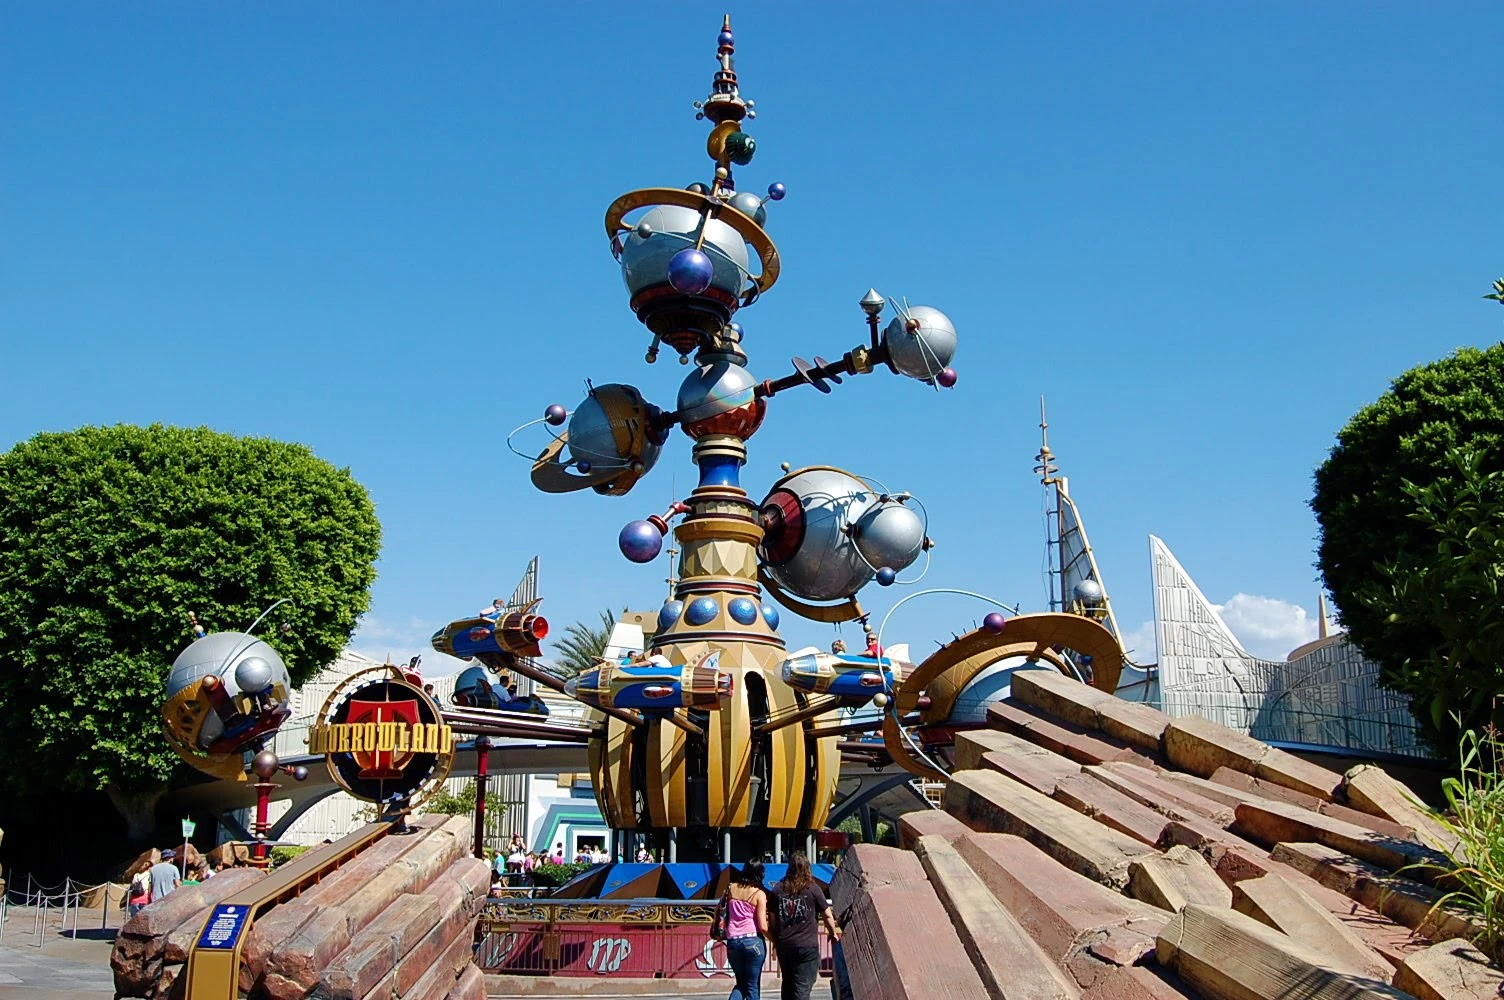 Une sculpture imaginative et futuriste ressemblant à l'Astro Orbiter dans un parc à thème, avec des couleurs vives, des éléments sphériques et des détails mécaniques sous un ciel bleu clair.